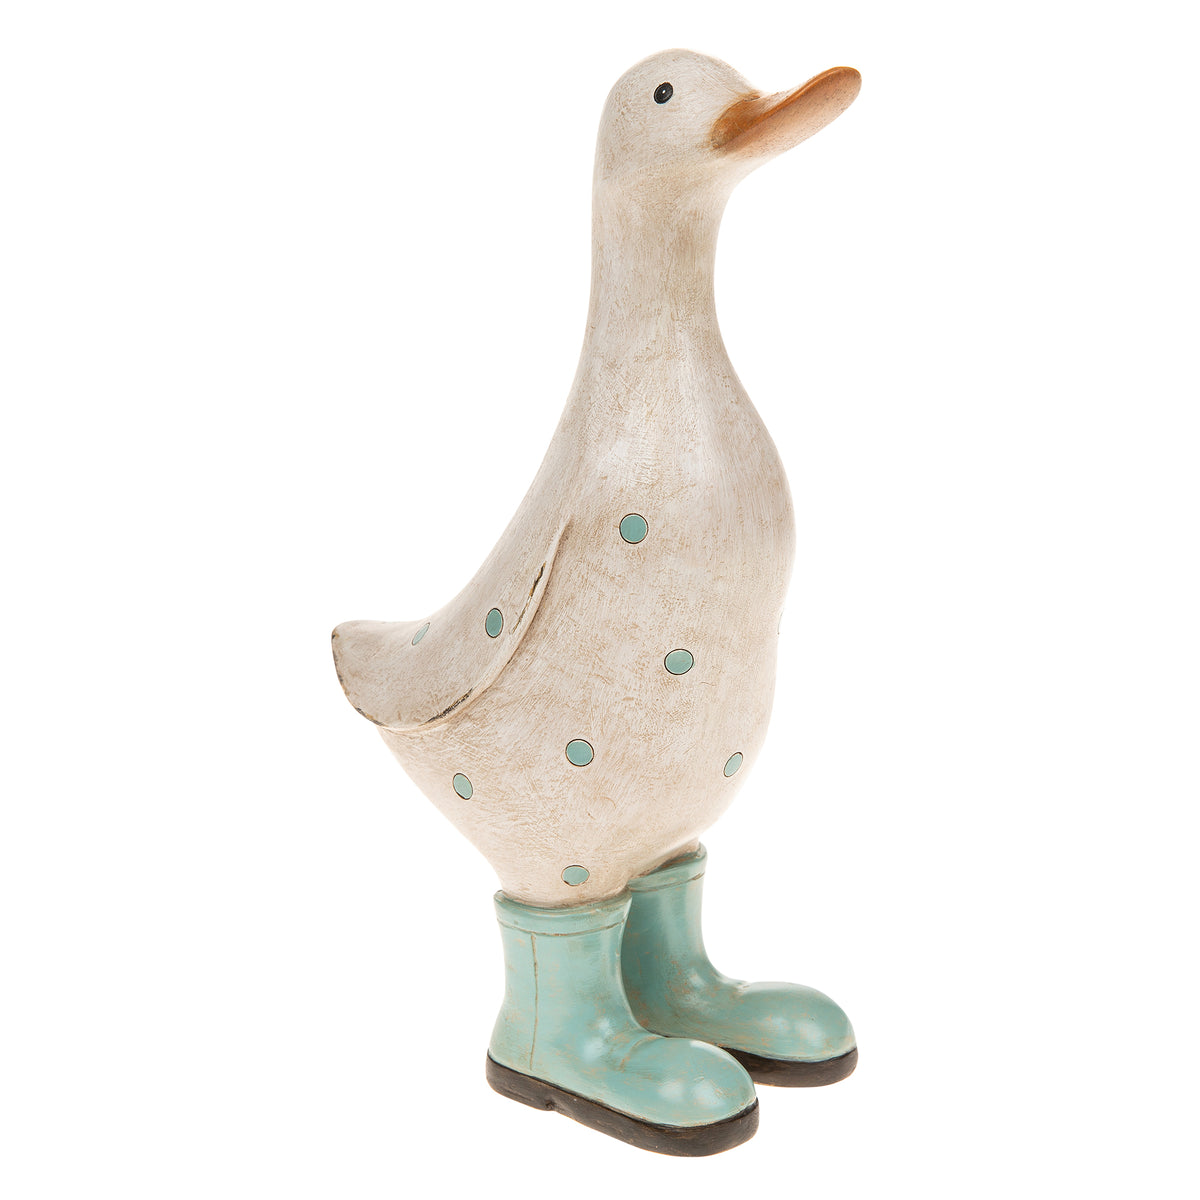 Aqua Polka Dot Duck Ornament - Medium